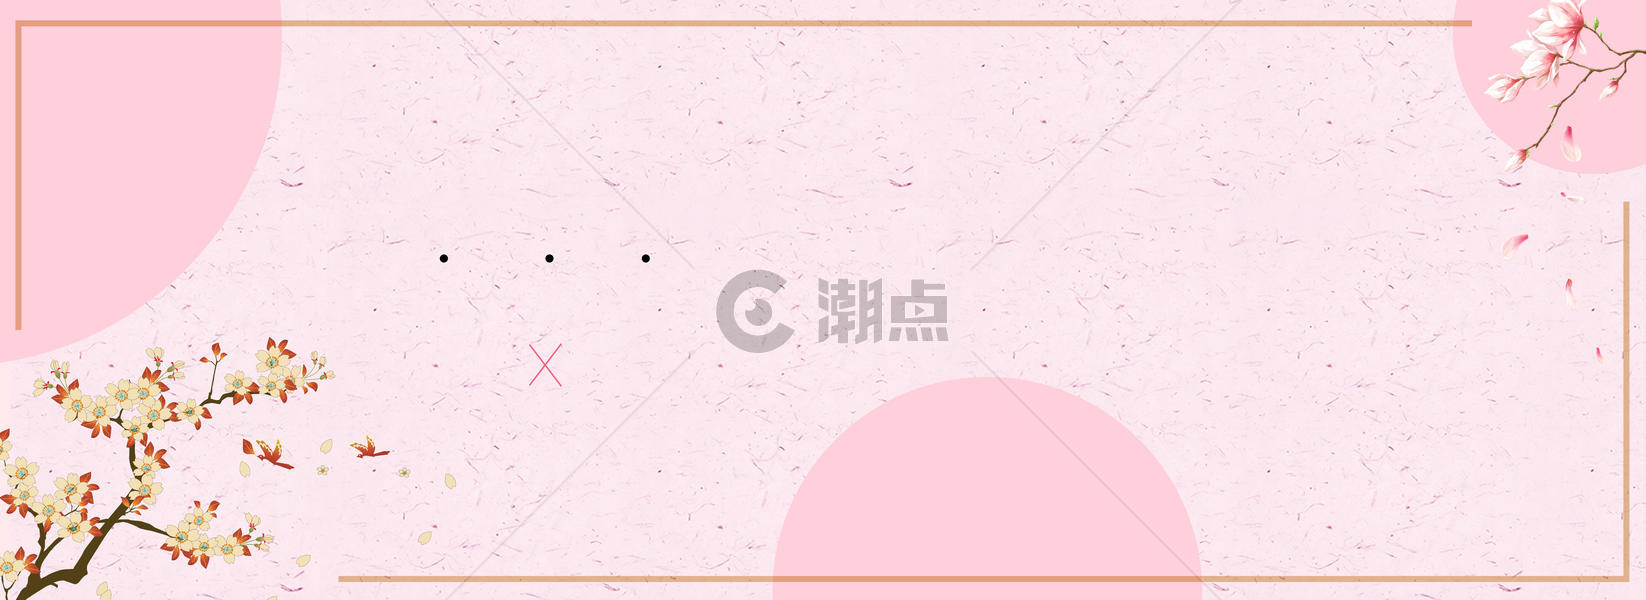 小清新粉色banner图片素材免费下载